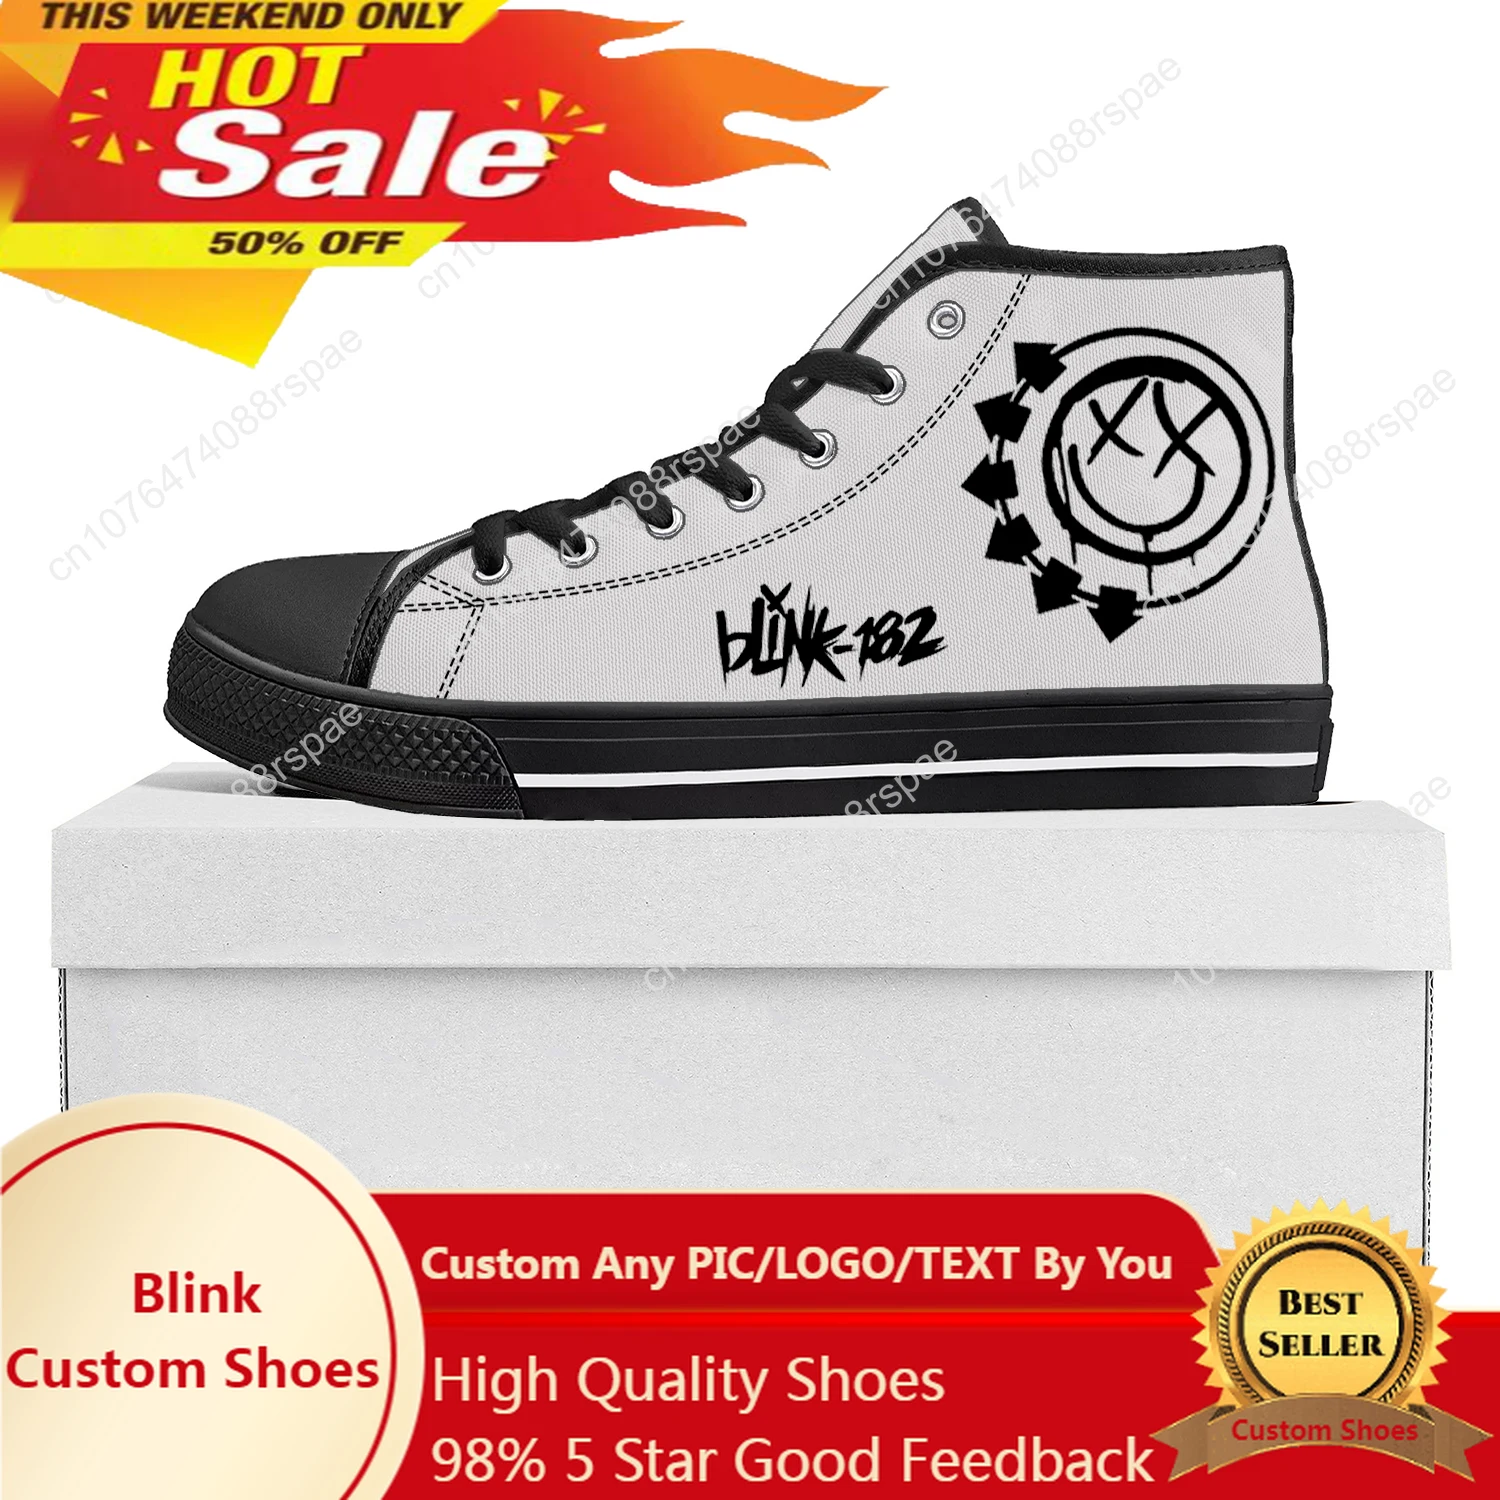 

Blink-182 популярность панк рок группа высокие высококачественные кроссовки Мужские Женские подростковые холщовые кроссовки пара обуви на заказ